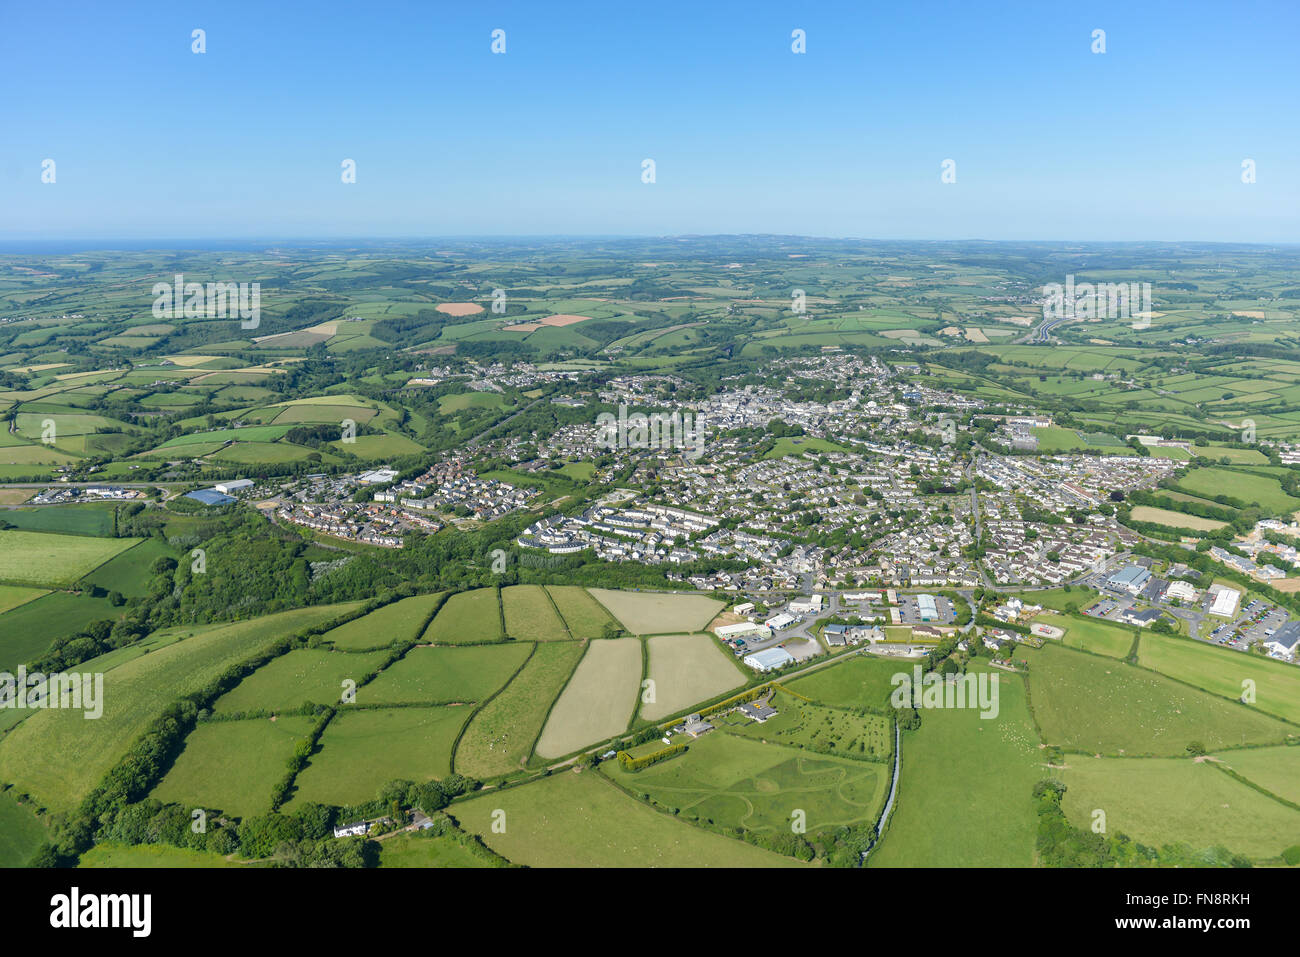 Une vue aérienne de la ville de Cornwall Liskeard et alentours Banque D'Images